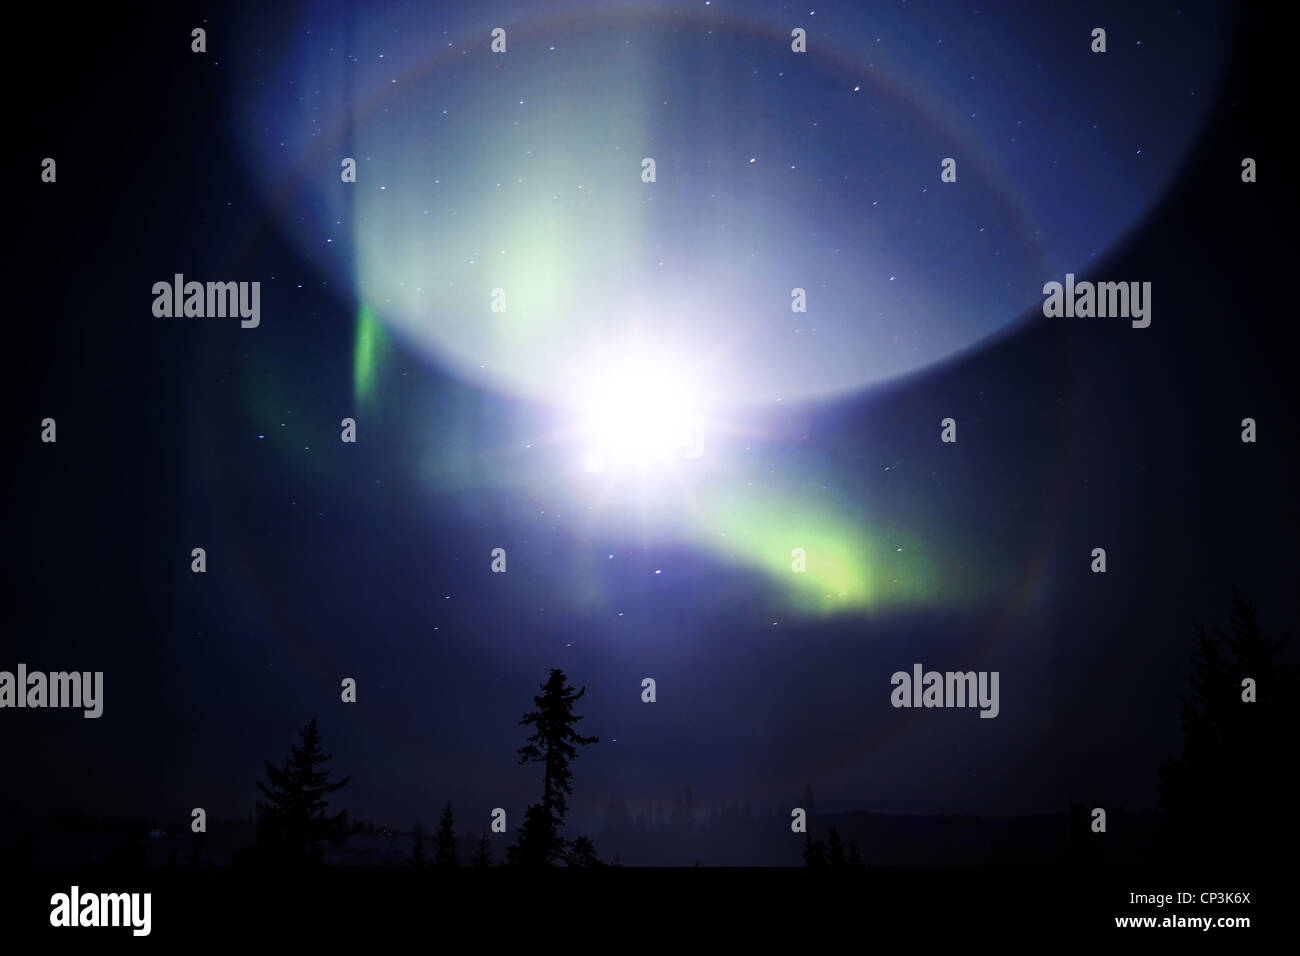 Extraño fenómeno en el cielo con una mirada de ciencia ficción creada mediante la superposición de fotos. Foto de stock